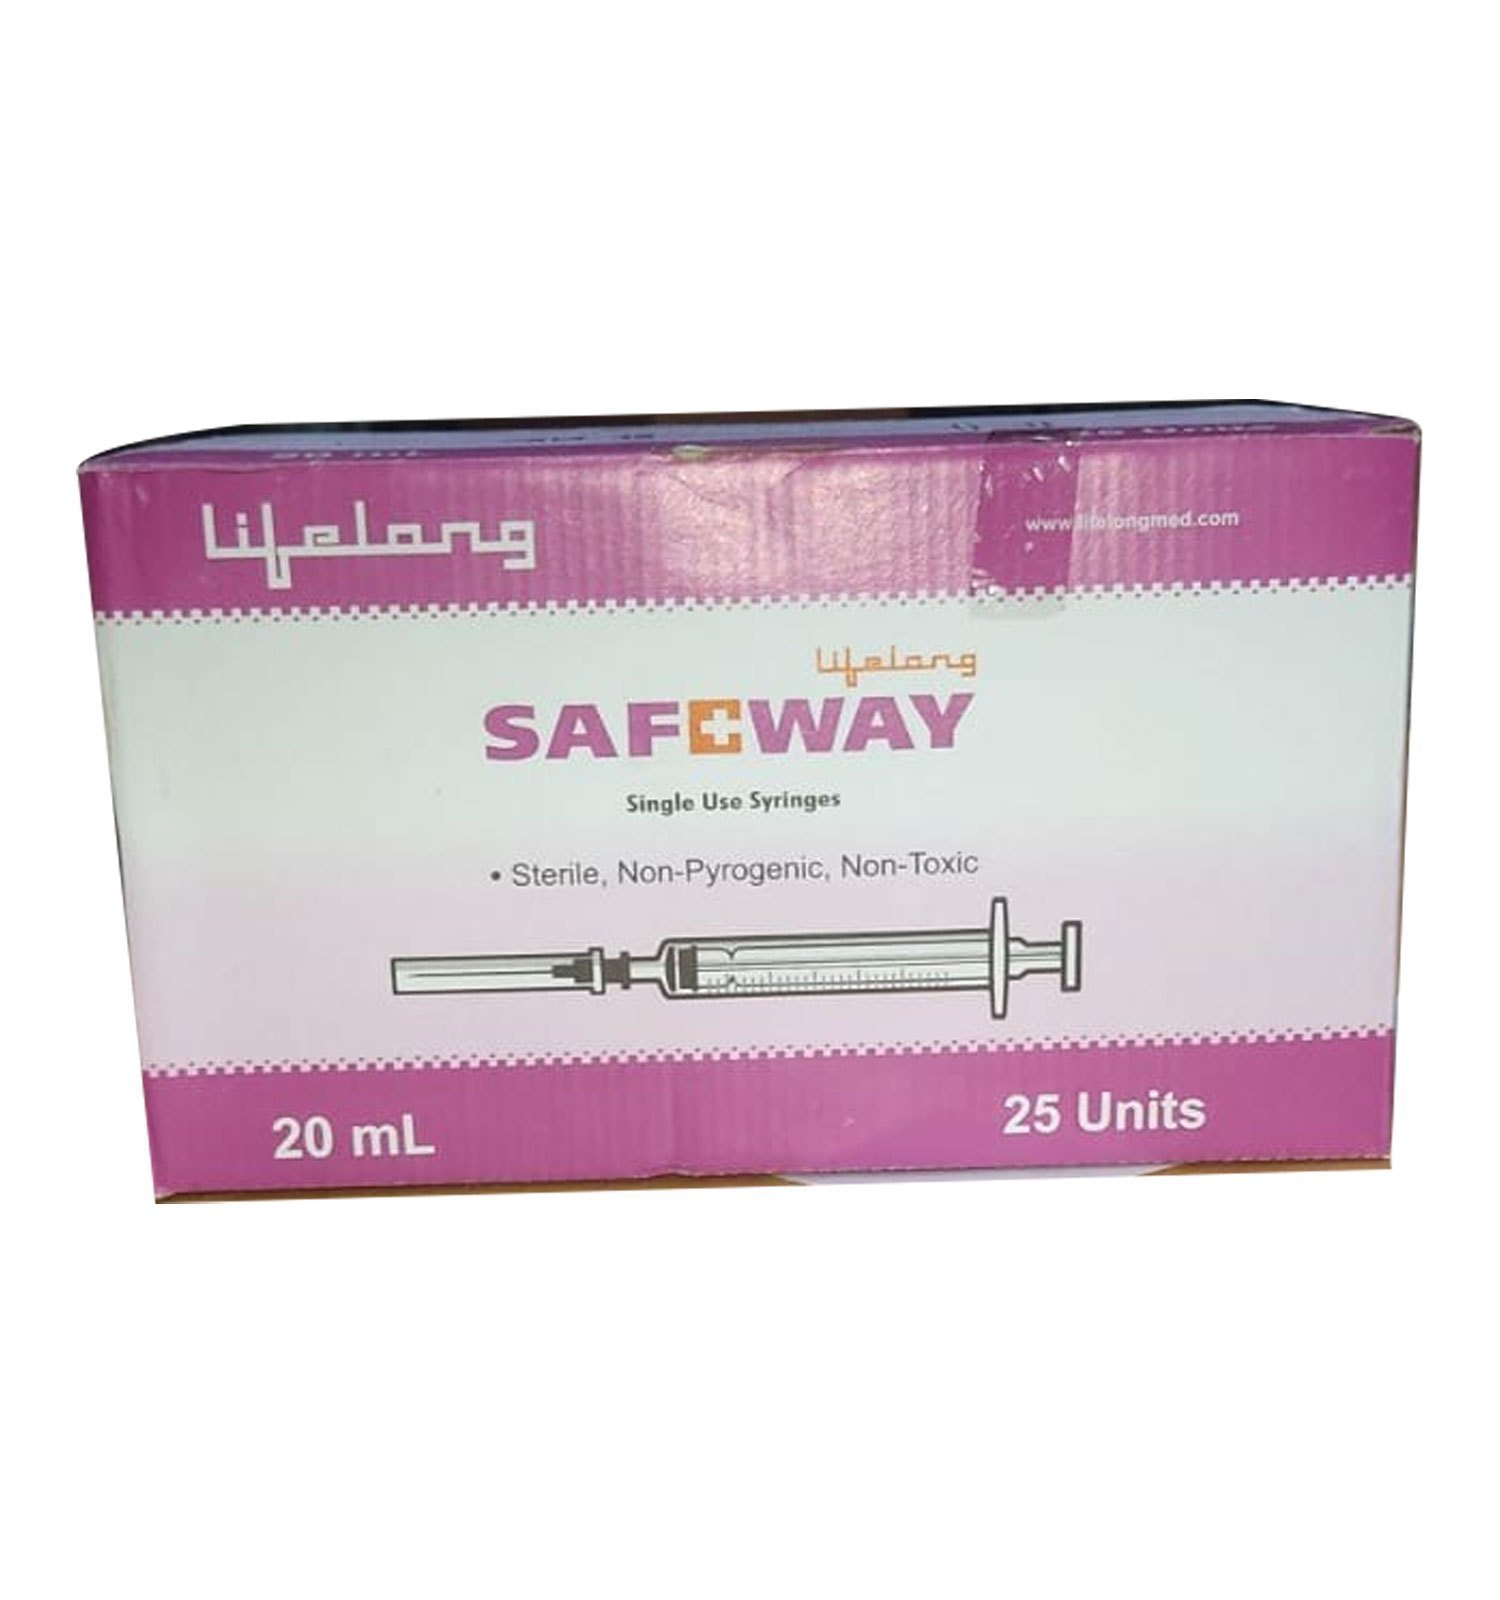 Lifelong Safeway Syringe 20ml (25 Units)